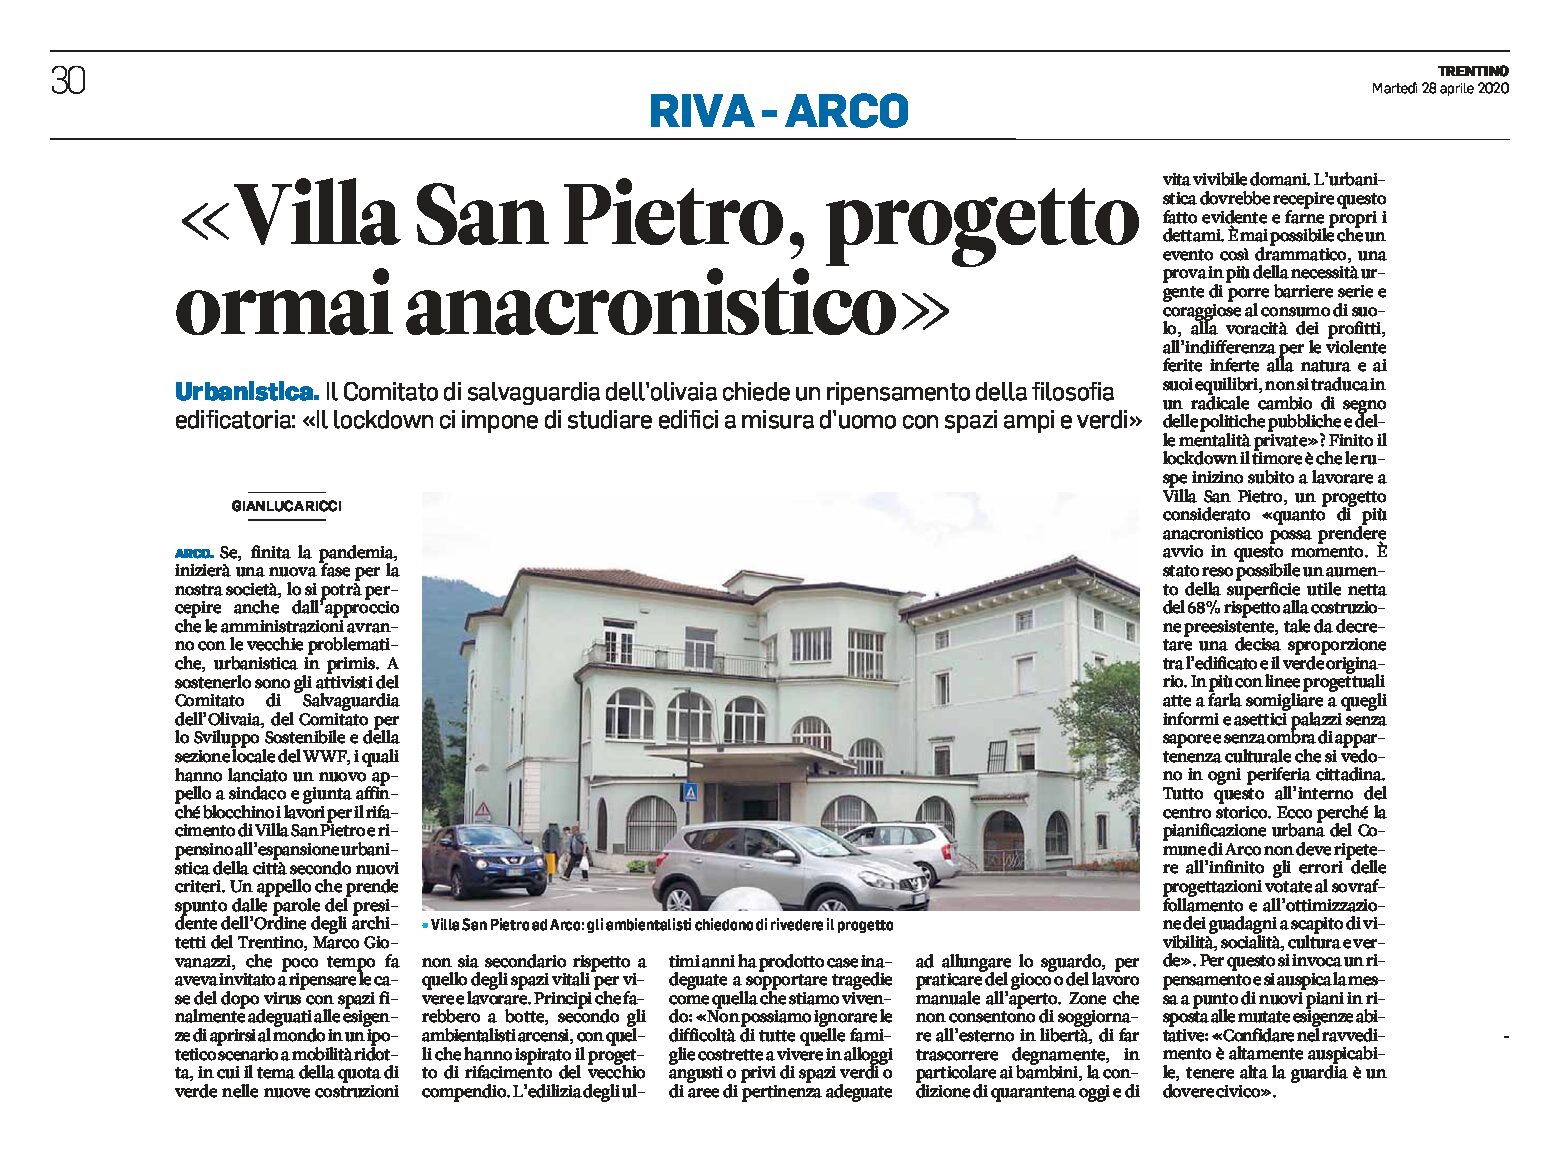 Arco, villa San Pietro: progetto ormai anacronistico